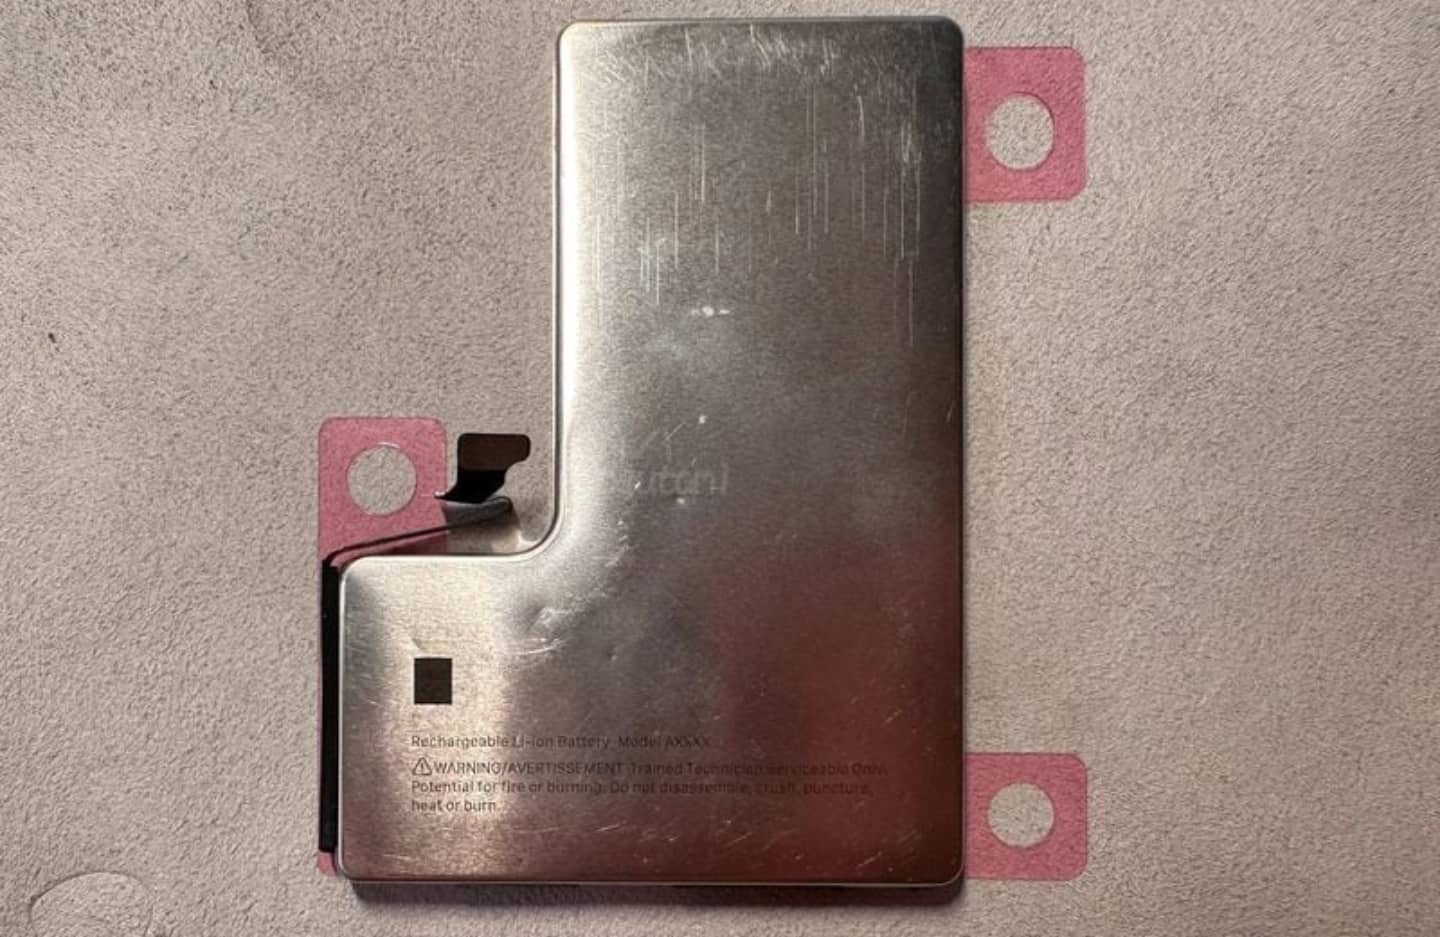 Imagen publicada en MacRumors que muestra una batería de acero inoxidable en forma de L para futuros iPhones